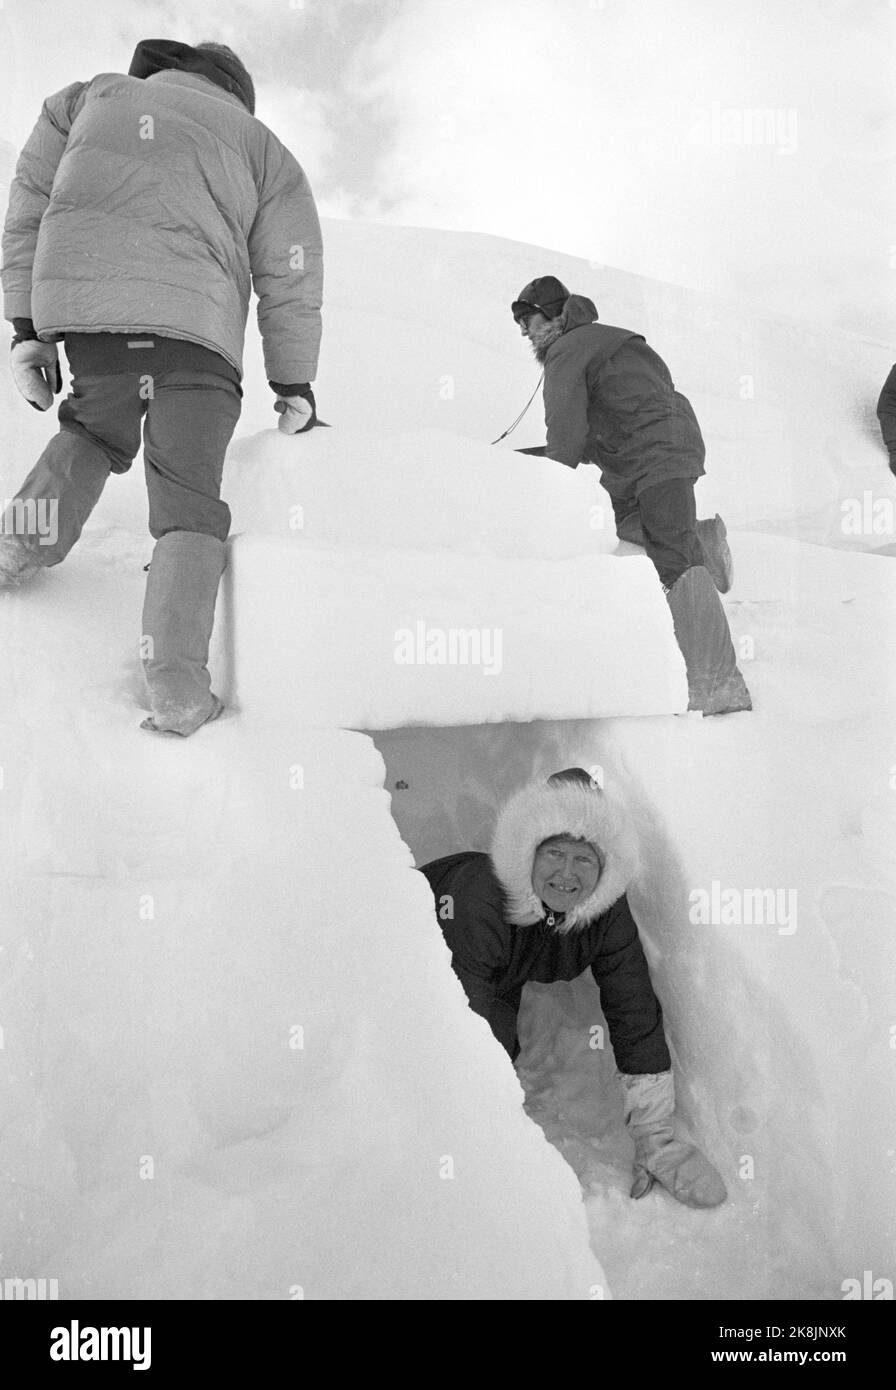 Hallingskeid 19720401 la Norwegian Tourist Association organizza qualcosa che chiamano Turveke ad Hallingskeid. Affittano la casa in pietra di NSB che era originariamente una caserma di costruzione per i ragazzi che costruirono la ferrovia di Bergen, e questa casa è la più comoda delle cabine incustodite dell'associazione turistica. Immaginazione; in un'escursione nelle montagne di Pasqua, deve avere un'occhiata alle piste di neve dove si può scavare in un tetto di cecchino. Karin Denstad, Oslo, sulla sua via di uscita dal bivacco di emergenza. Foto; Sverre A. Børretzen / corrente / NTB Foto Stock